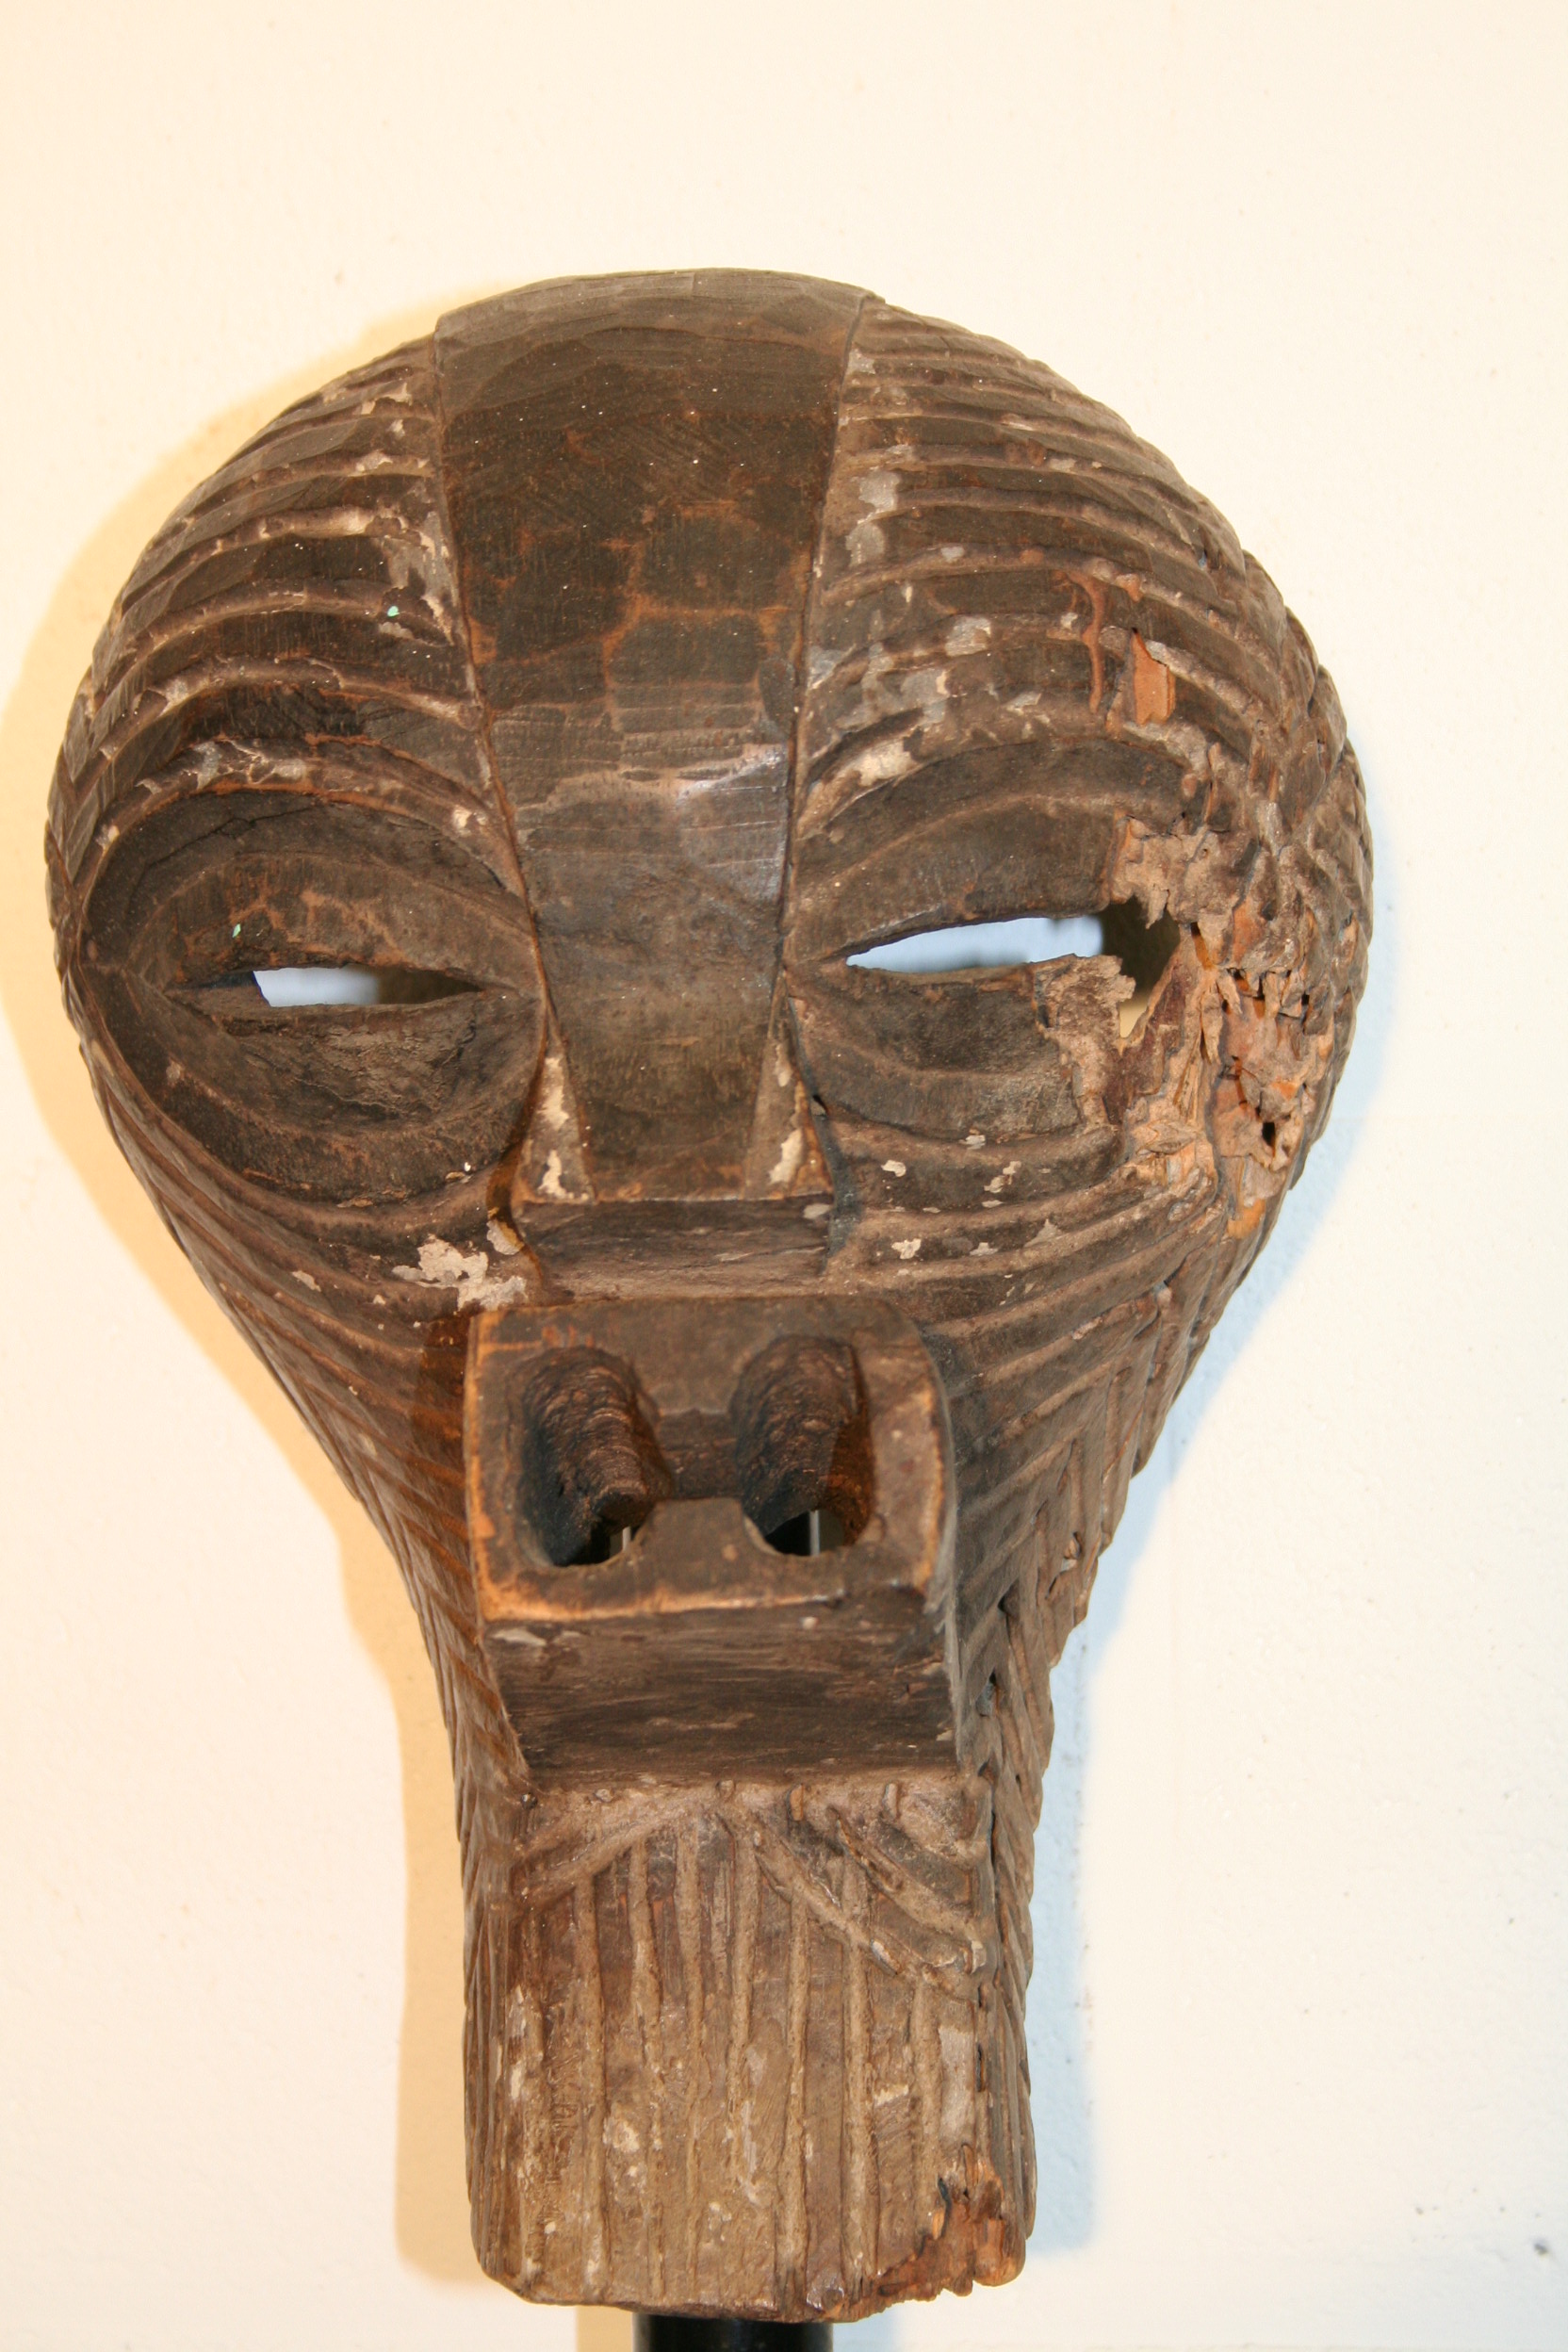 songye(masque), d`afrique : R.d.du congo, statuette songye(masque), masque ancien africain songye(masque), art du R.d.du congo - Art Africain, collection privées Belgique. Statue africaine de la tribu des songye(masque), provenant du R.d.du congo, 1631 Vieux petit masque Songye h.25cm.son côté gauche abimé par les thermites.

OUD SONGE MASKERTJE.H;25CM;. art,culture,masque,statue,statuette,pot,ivoire,exposition,expo,masque original,masques,statues,statuettes,pots,expositions,expo,masques originaux,collectionneur d`art,art africain,culture africaine,masque africain,statue africaine,statuette africaine,pot africain,ivoire africain,exposition africain,expo africain,masque origina africainl,masques africains,statues africaines,statuettes africaines,pots africains,expositions africaines,expo africaines,masques originaux  africains,collectionneur d`art africain